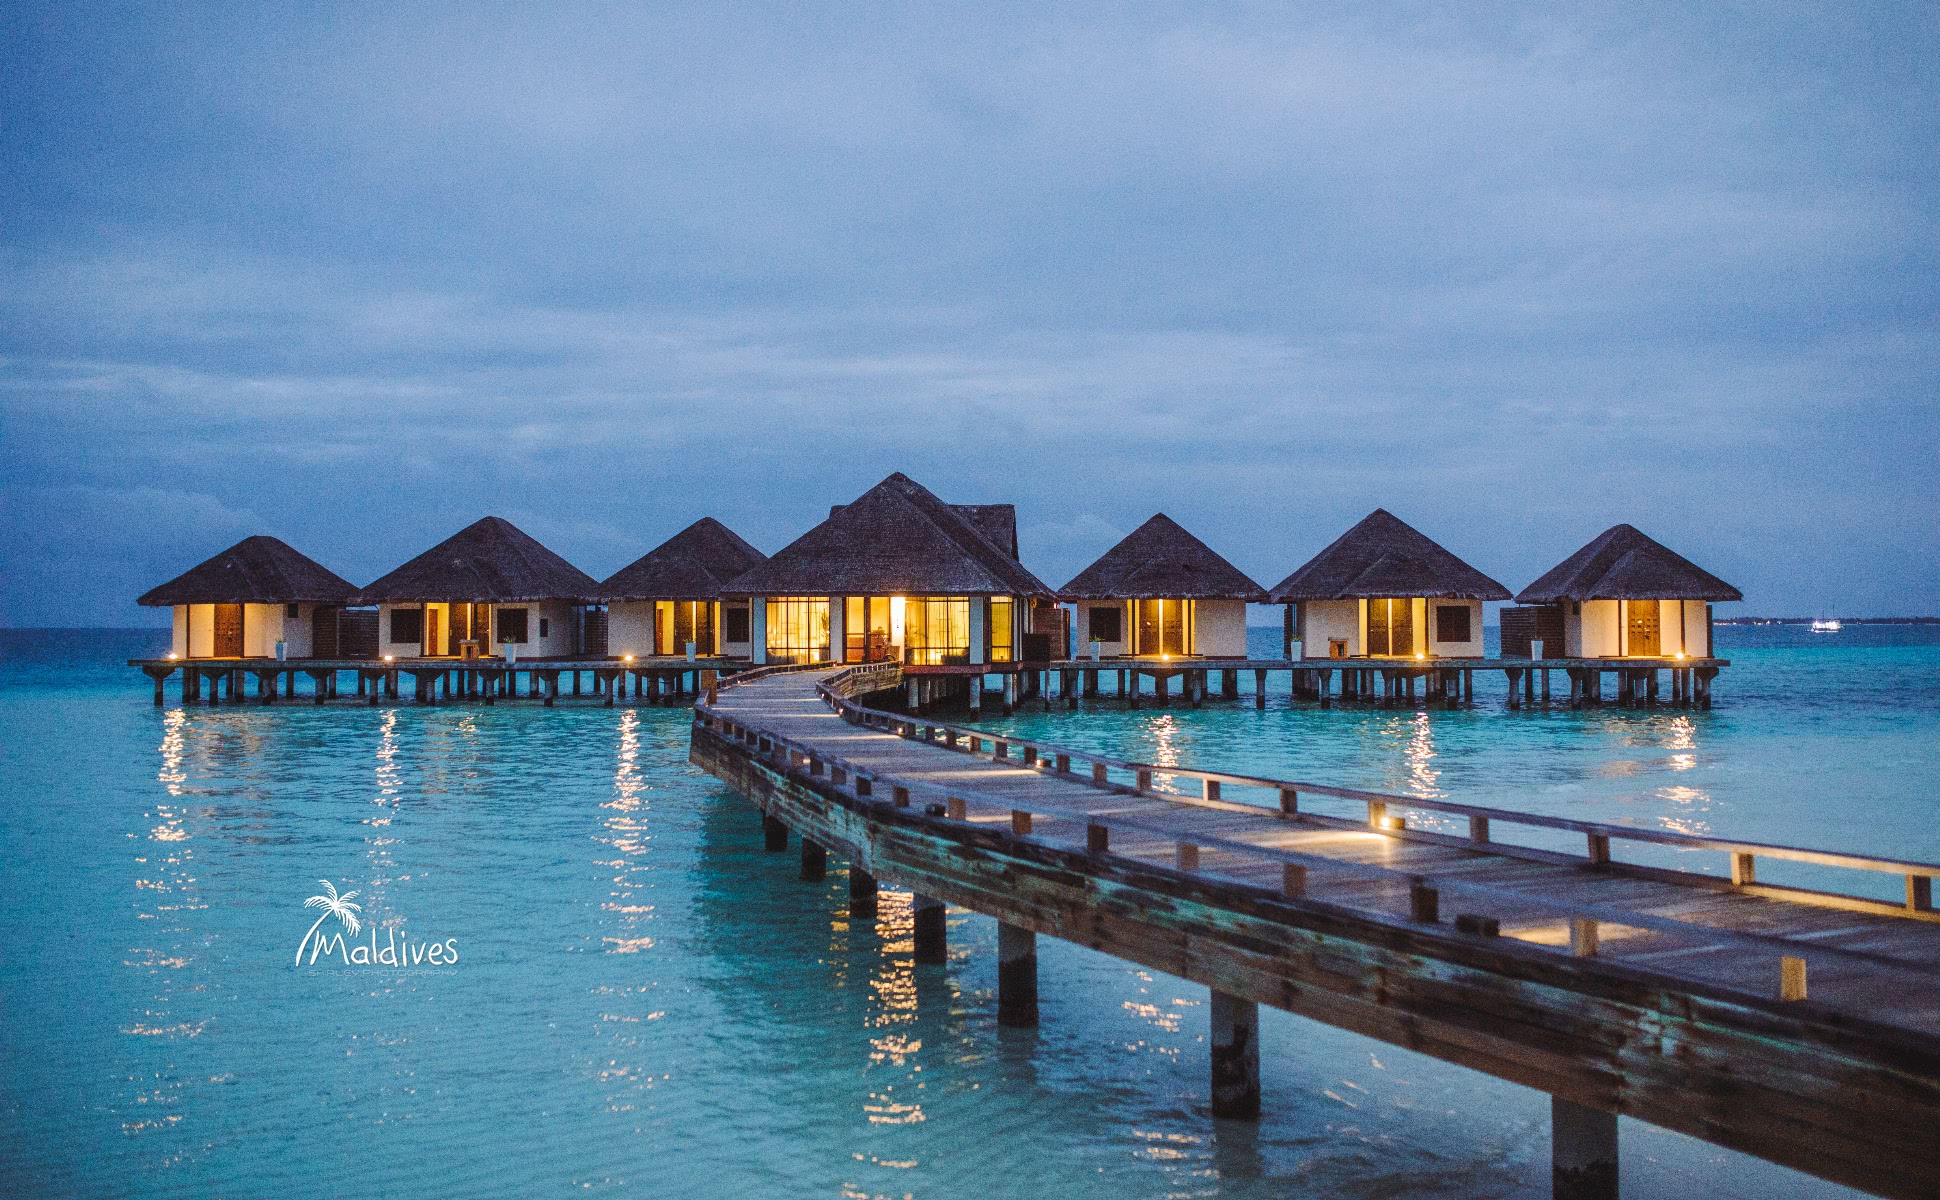 马尔代夫 ~天堂岛度假村 Maldives ~ Paradise Island Resort - Great Leap Tours